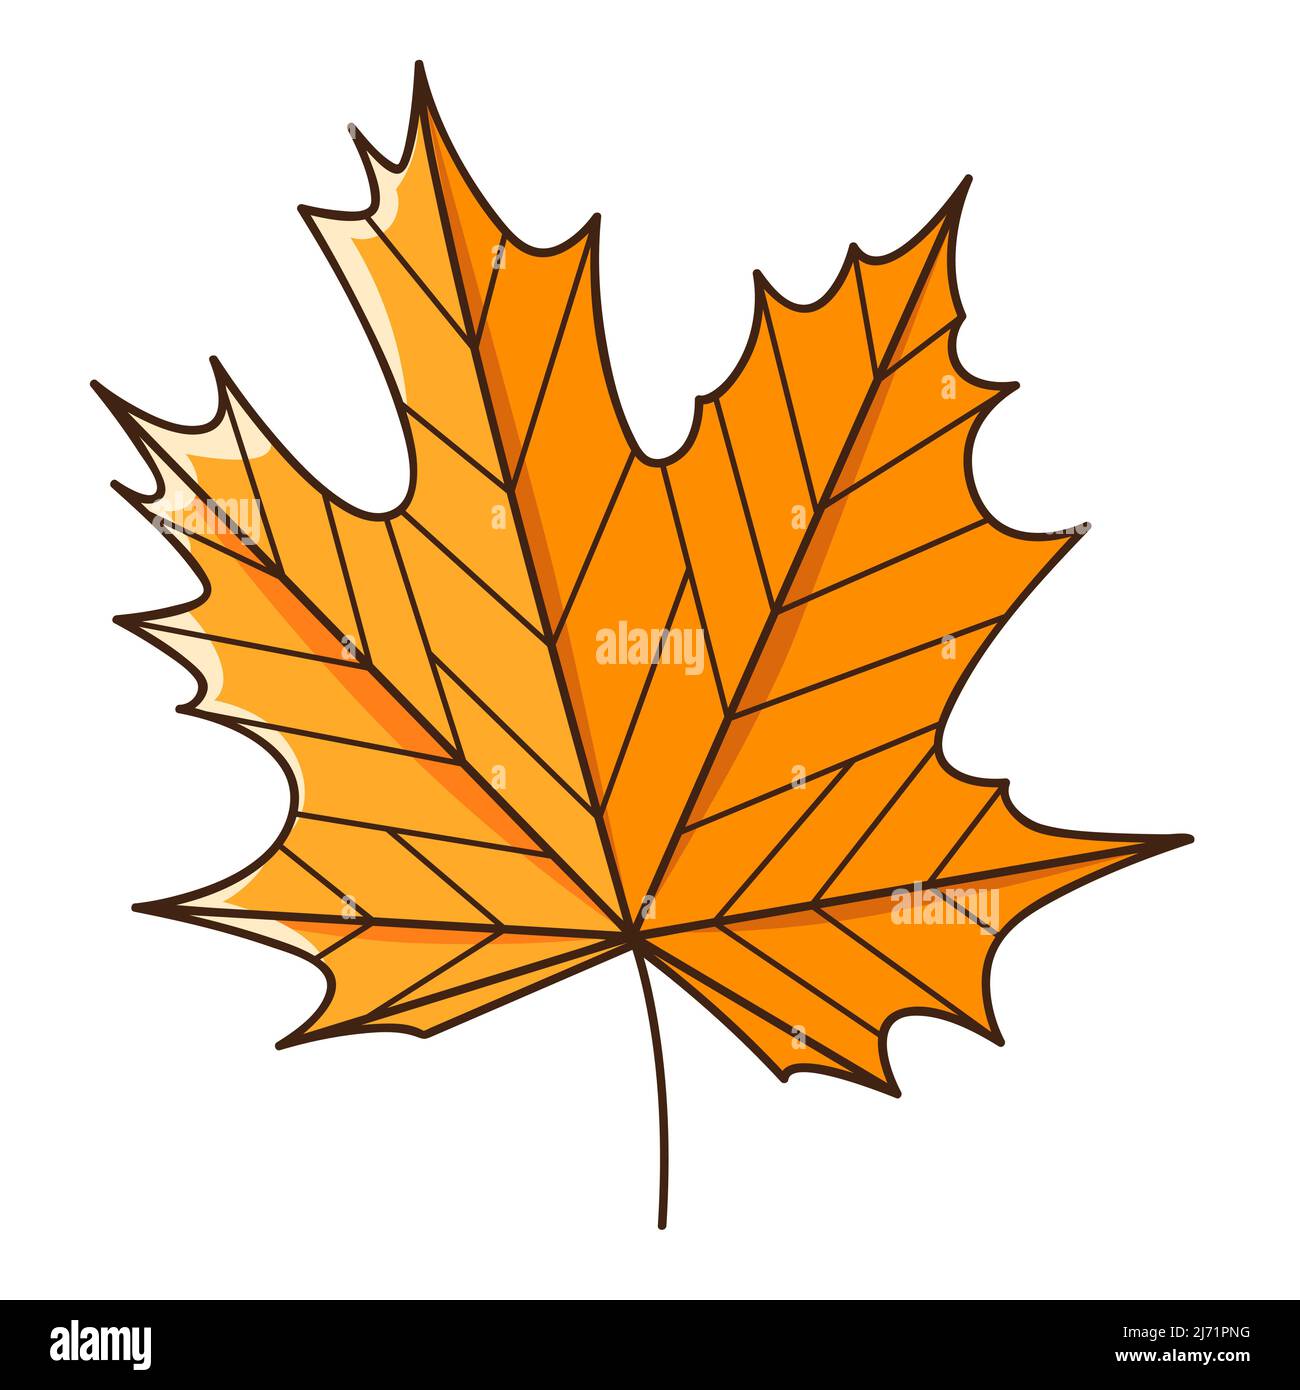 Foglia d'autunno di acero giallo arancio. Botanica, elemento di disegno vegetale con contorno. Ora di autunno. Doodle, disegnato a mano. Design piatto. Illustrazione vettoriale a colori Illustrazione Vettoriale